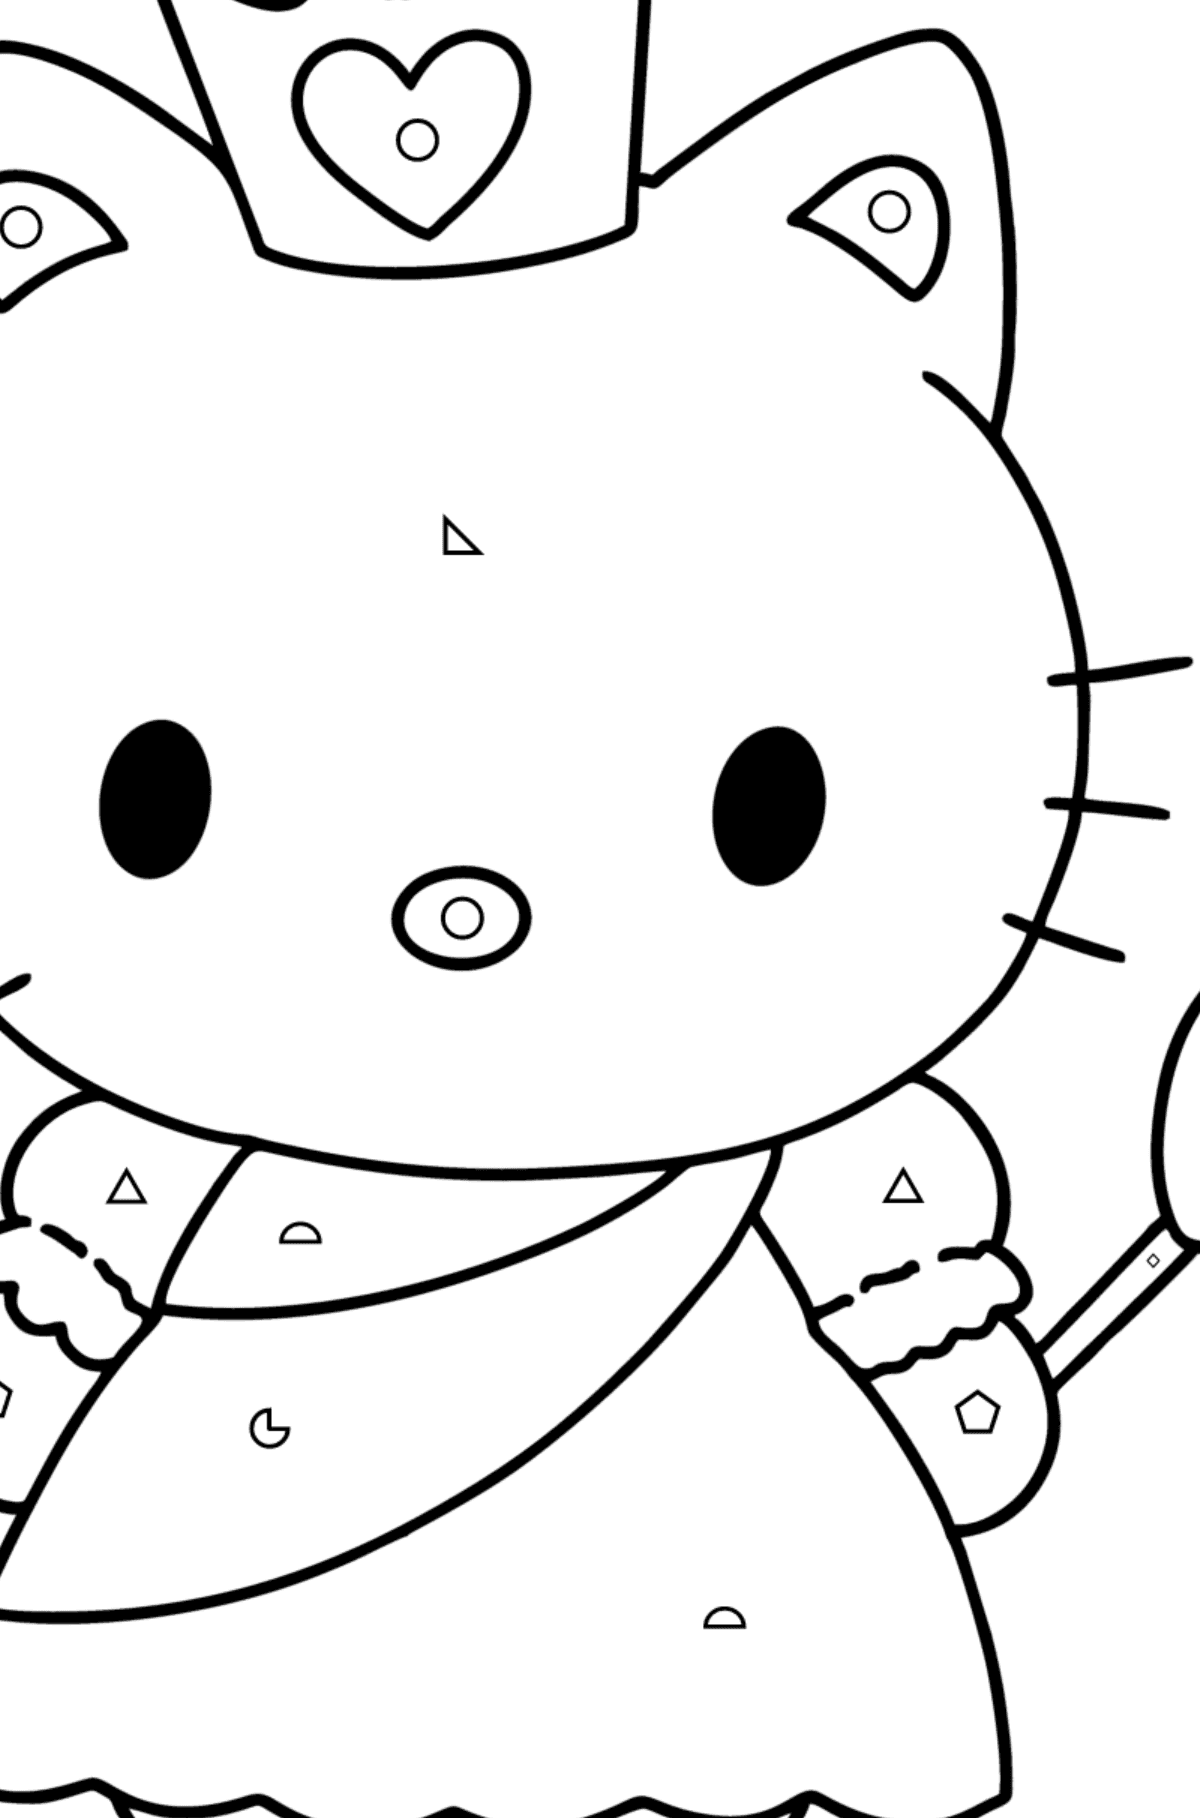 Boyama sayfası Hello Kitty bir prenses - Geometrik Şekillerle Boyama çocuklar için